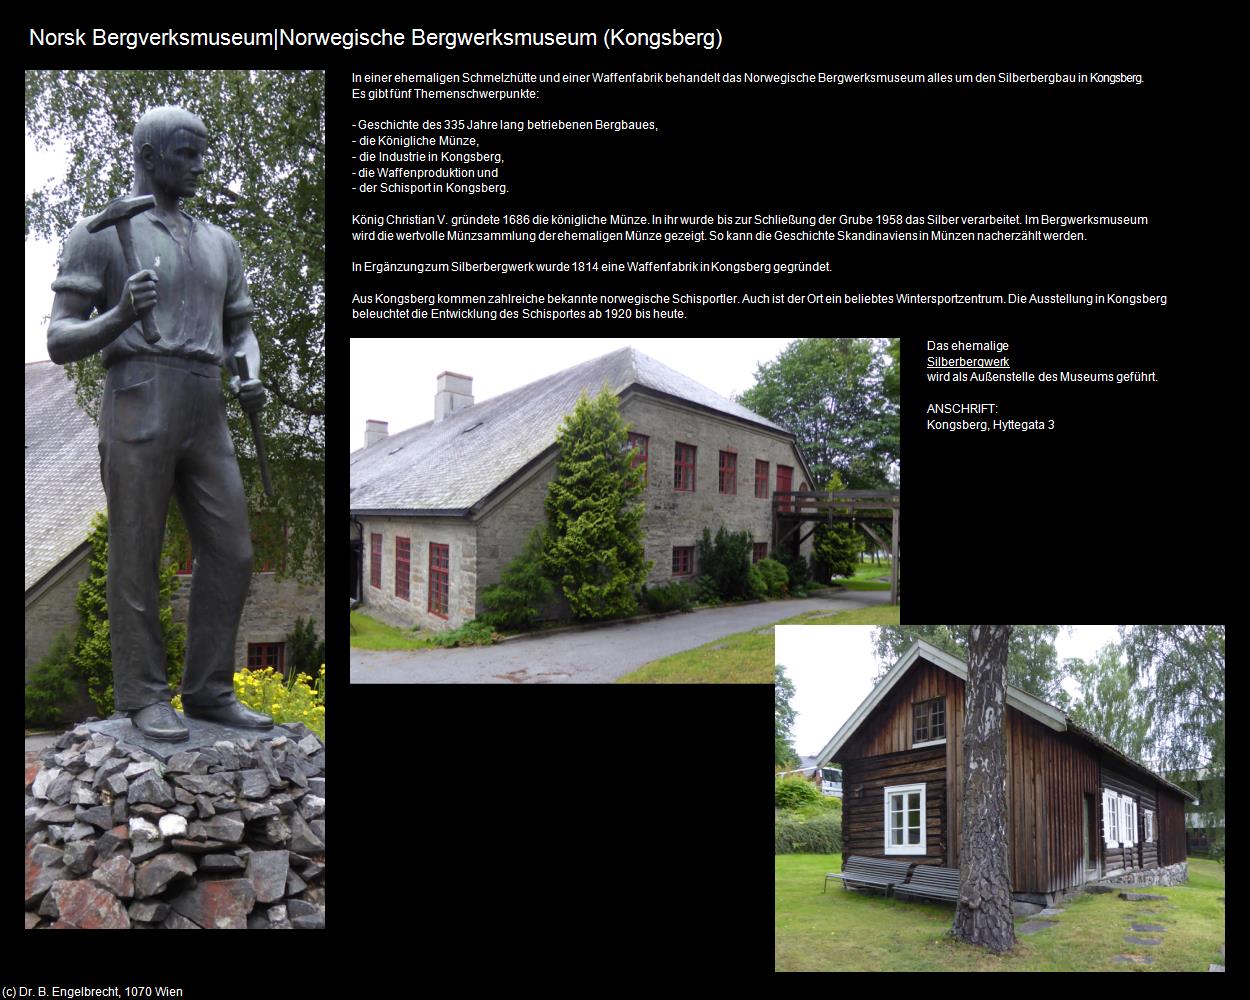 Norsk Bergverksmuseum|Norwegisches Bergwerksmuseum (Kongsberg) in Kulturatlas-REISE nach NORWEGEN(c)B.Engelbrecht